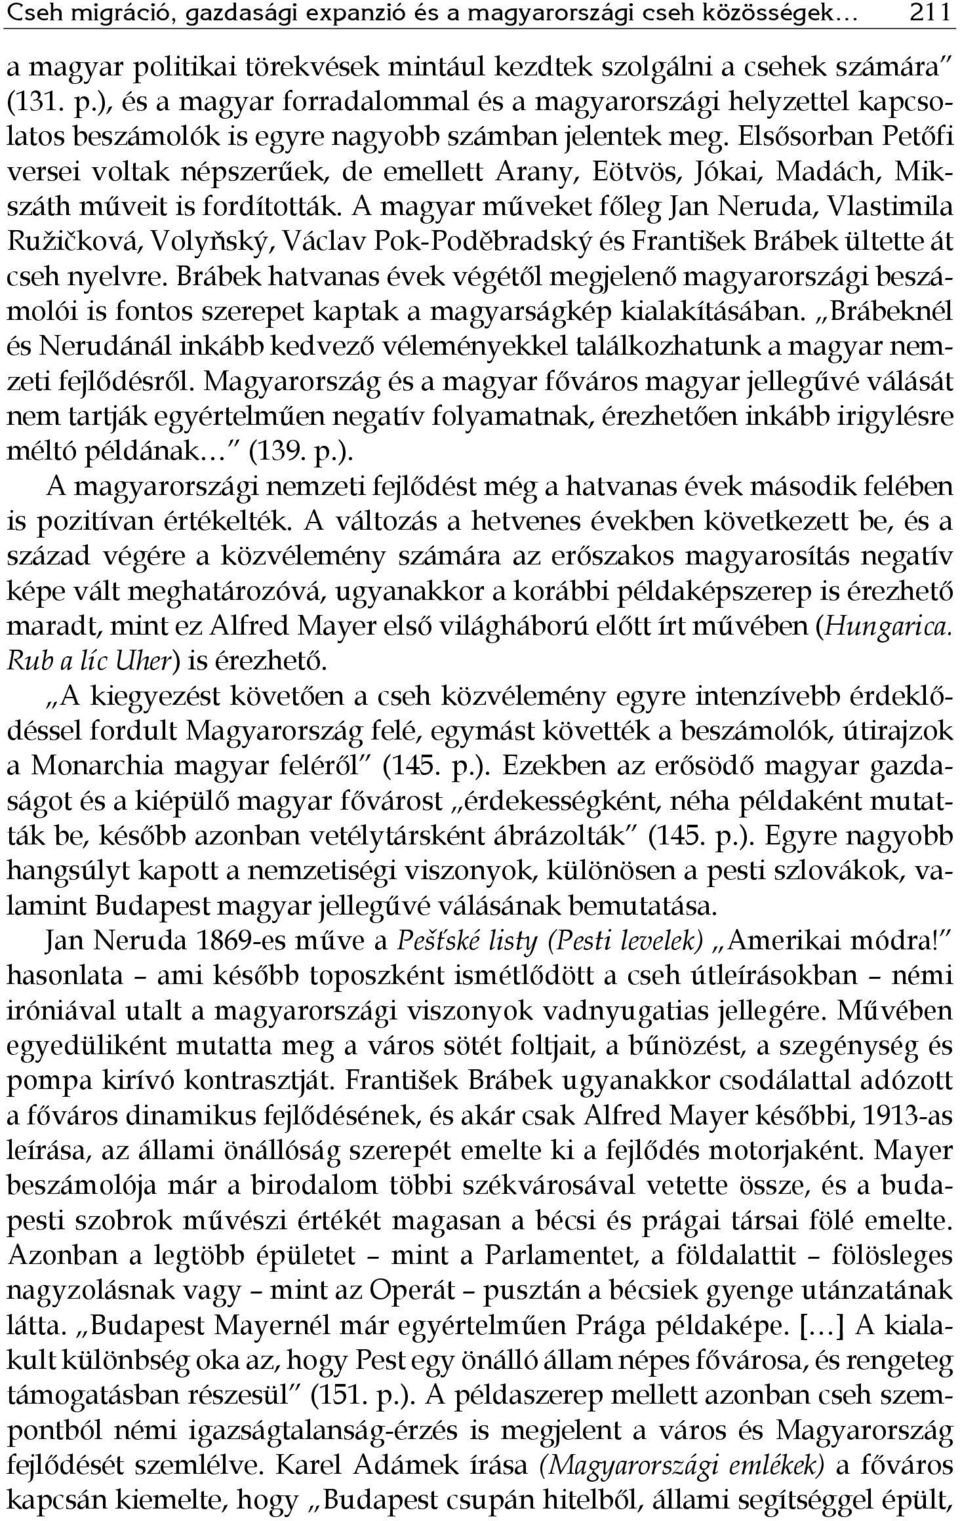 Elsősorban Petőfi versei voltak népszerűek, de emellett Arany, Eötvös, Jókai, Madách, Mikszáth műveit is fordították.